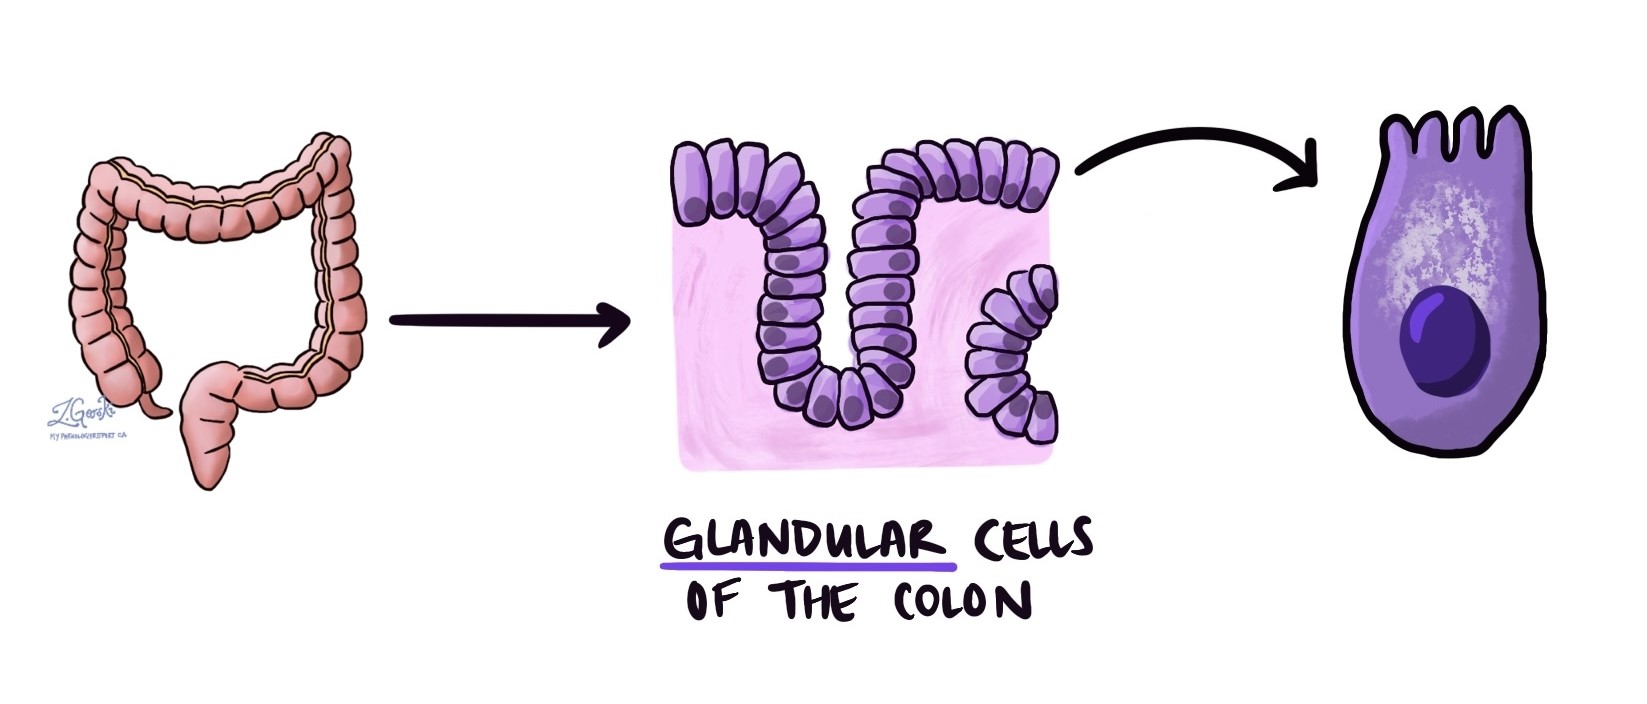 Cellule ghiandolari